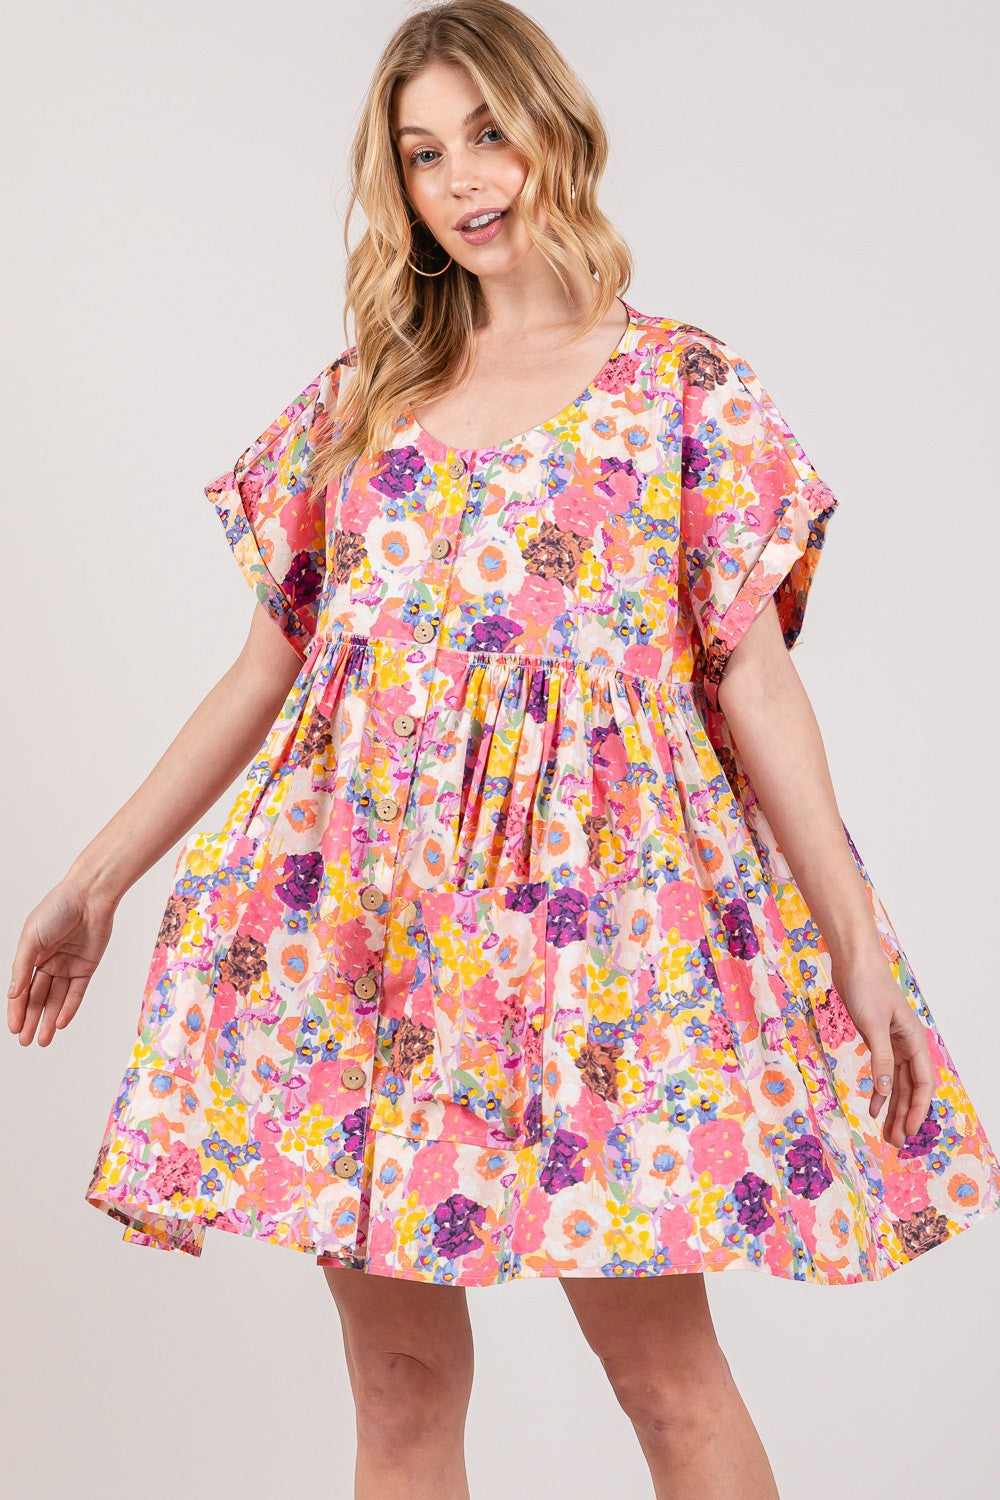 SAGE + FIG Floral Short Sleeve Babydoll Dress with Pockets Trendsi